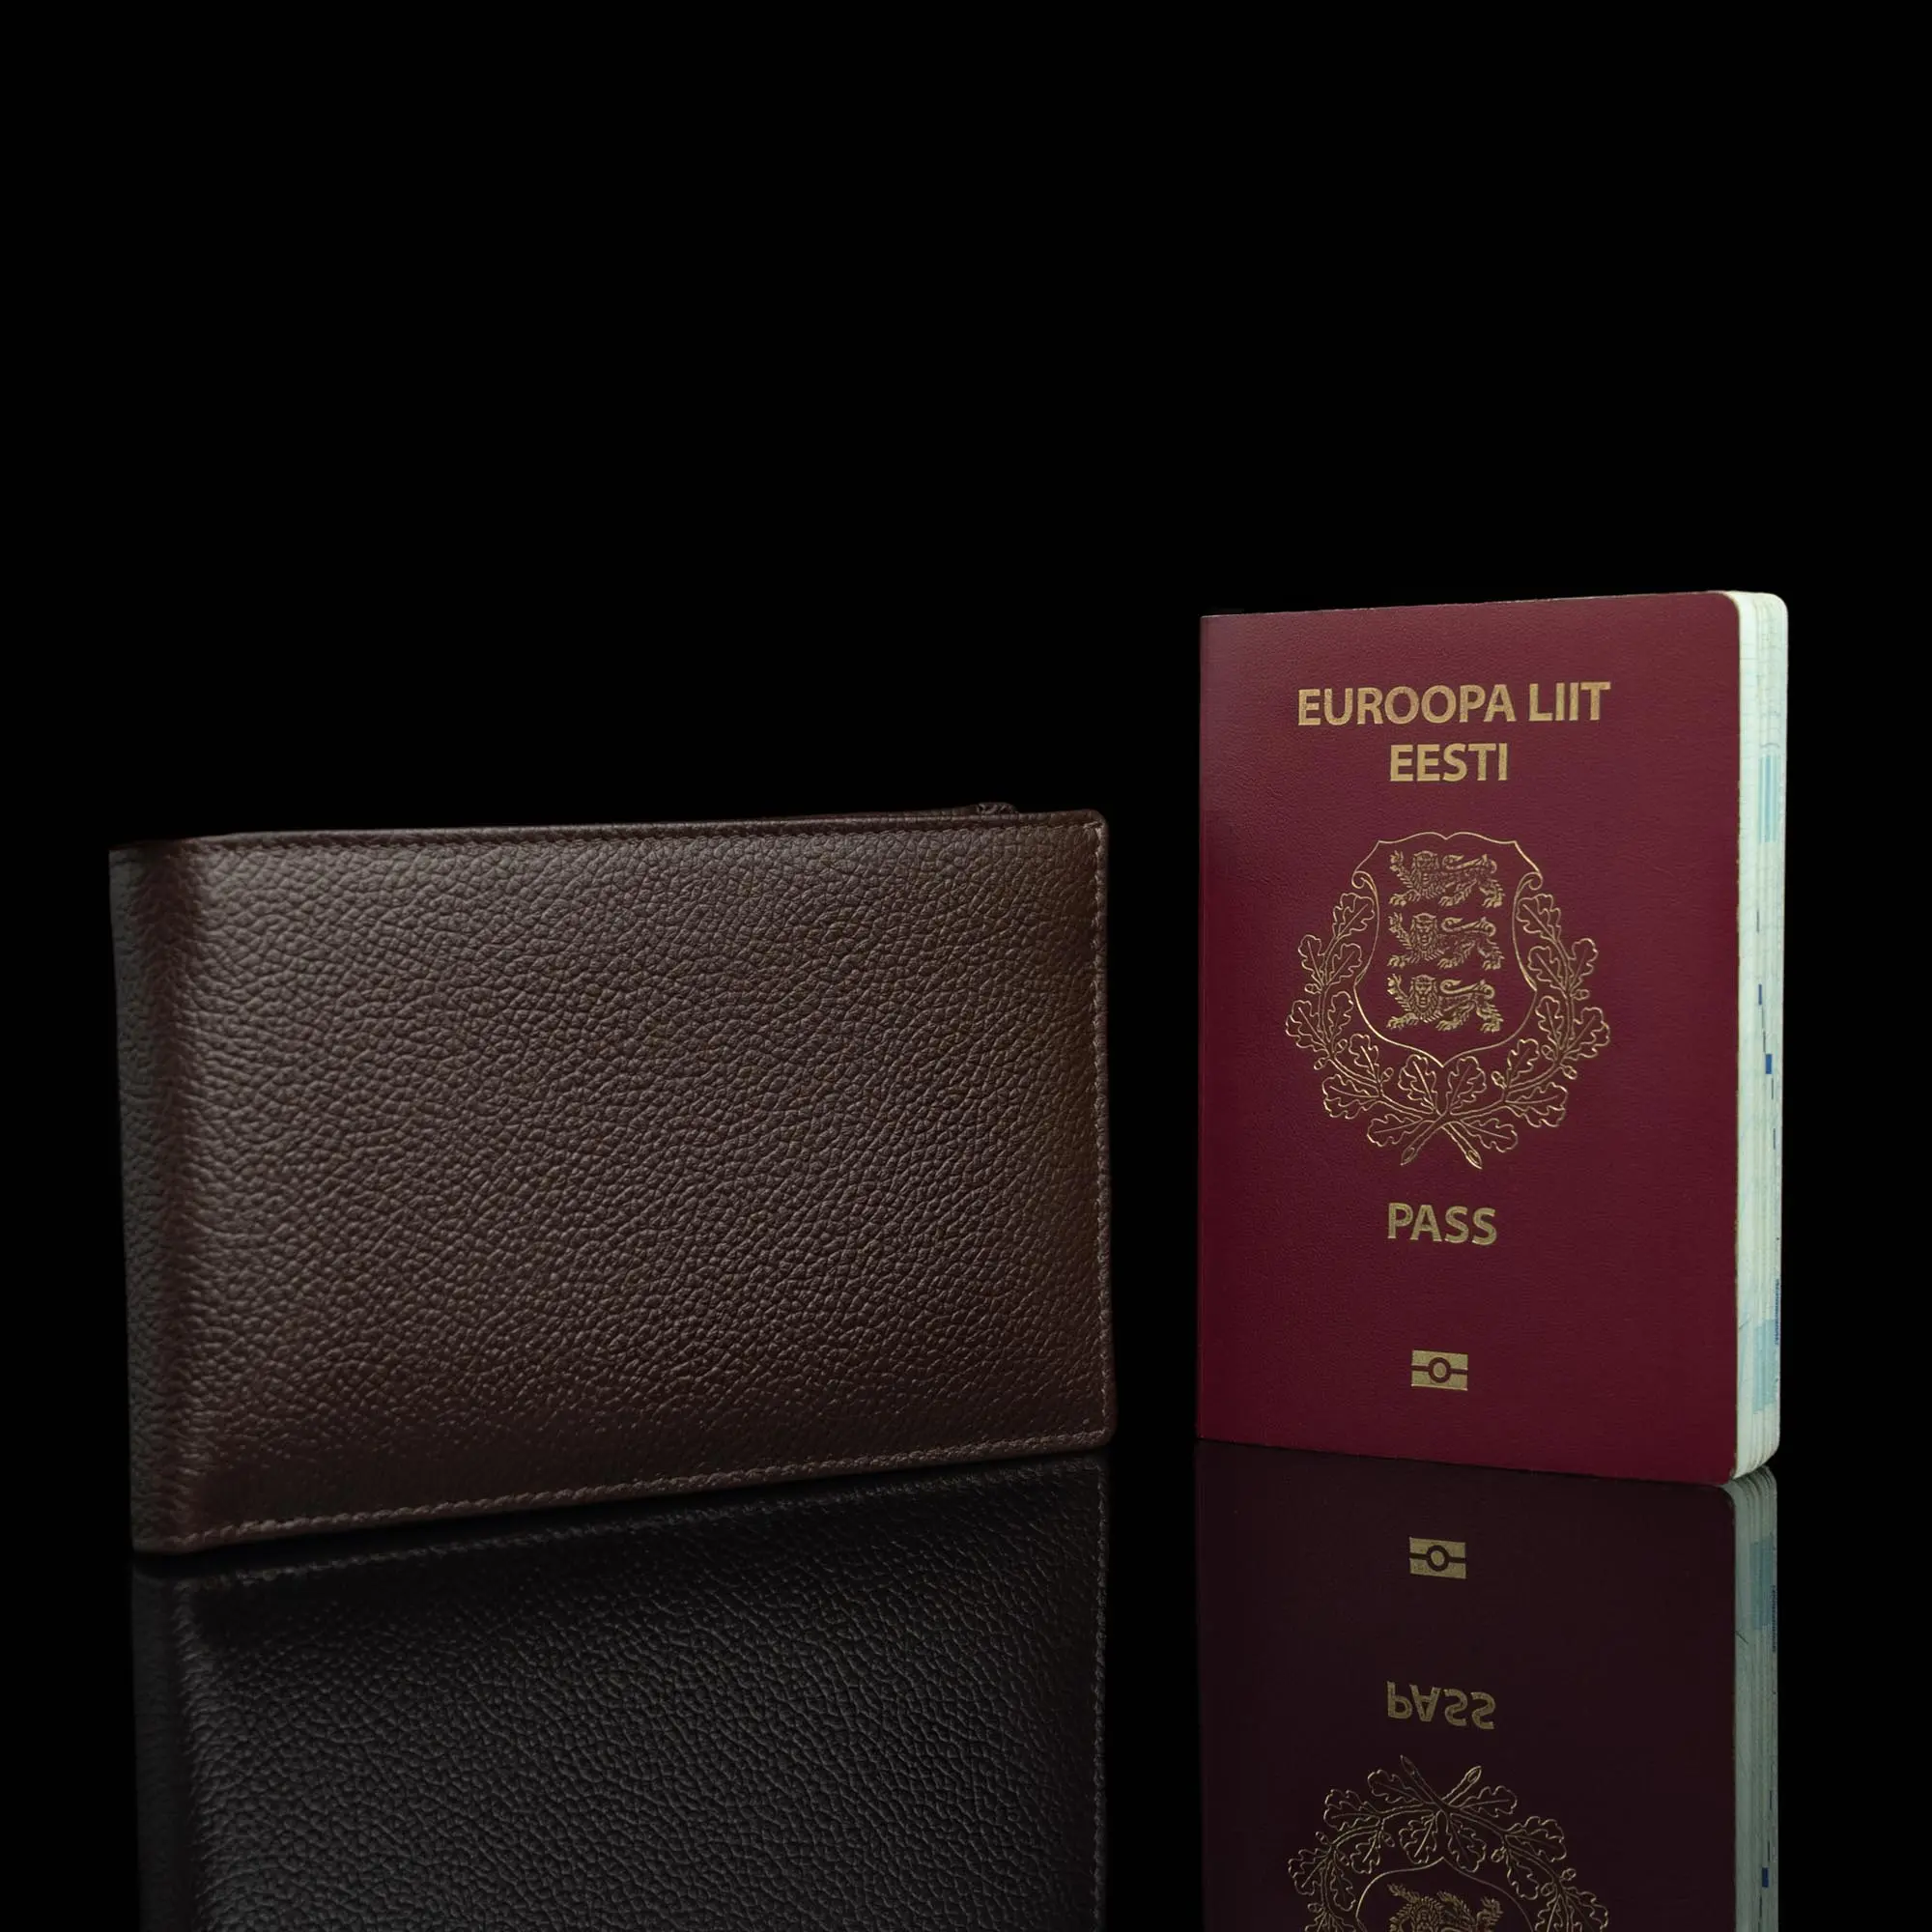 von baer luksuslik nahast pass portmonee reisi jaoks pruun ja pass eesti disain